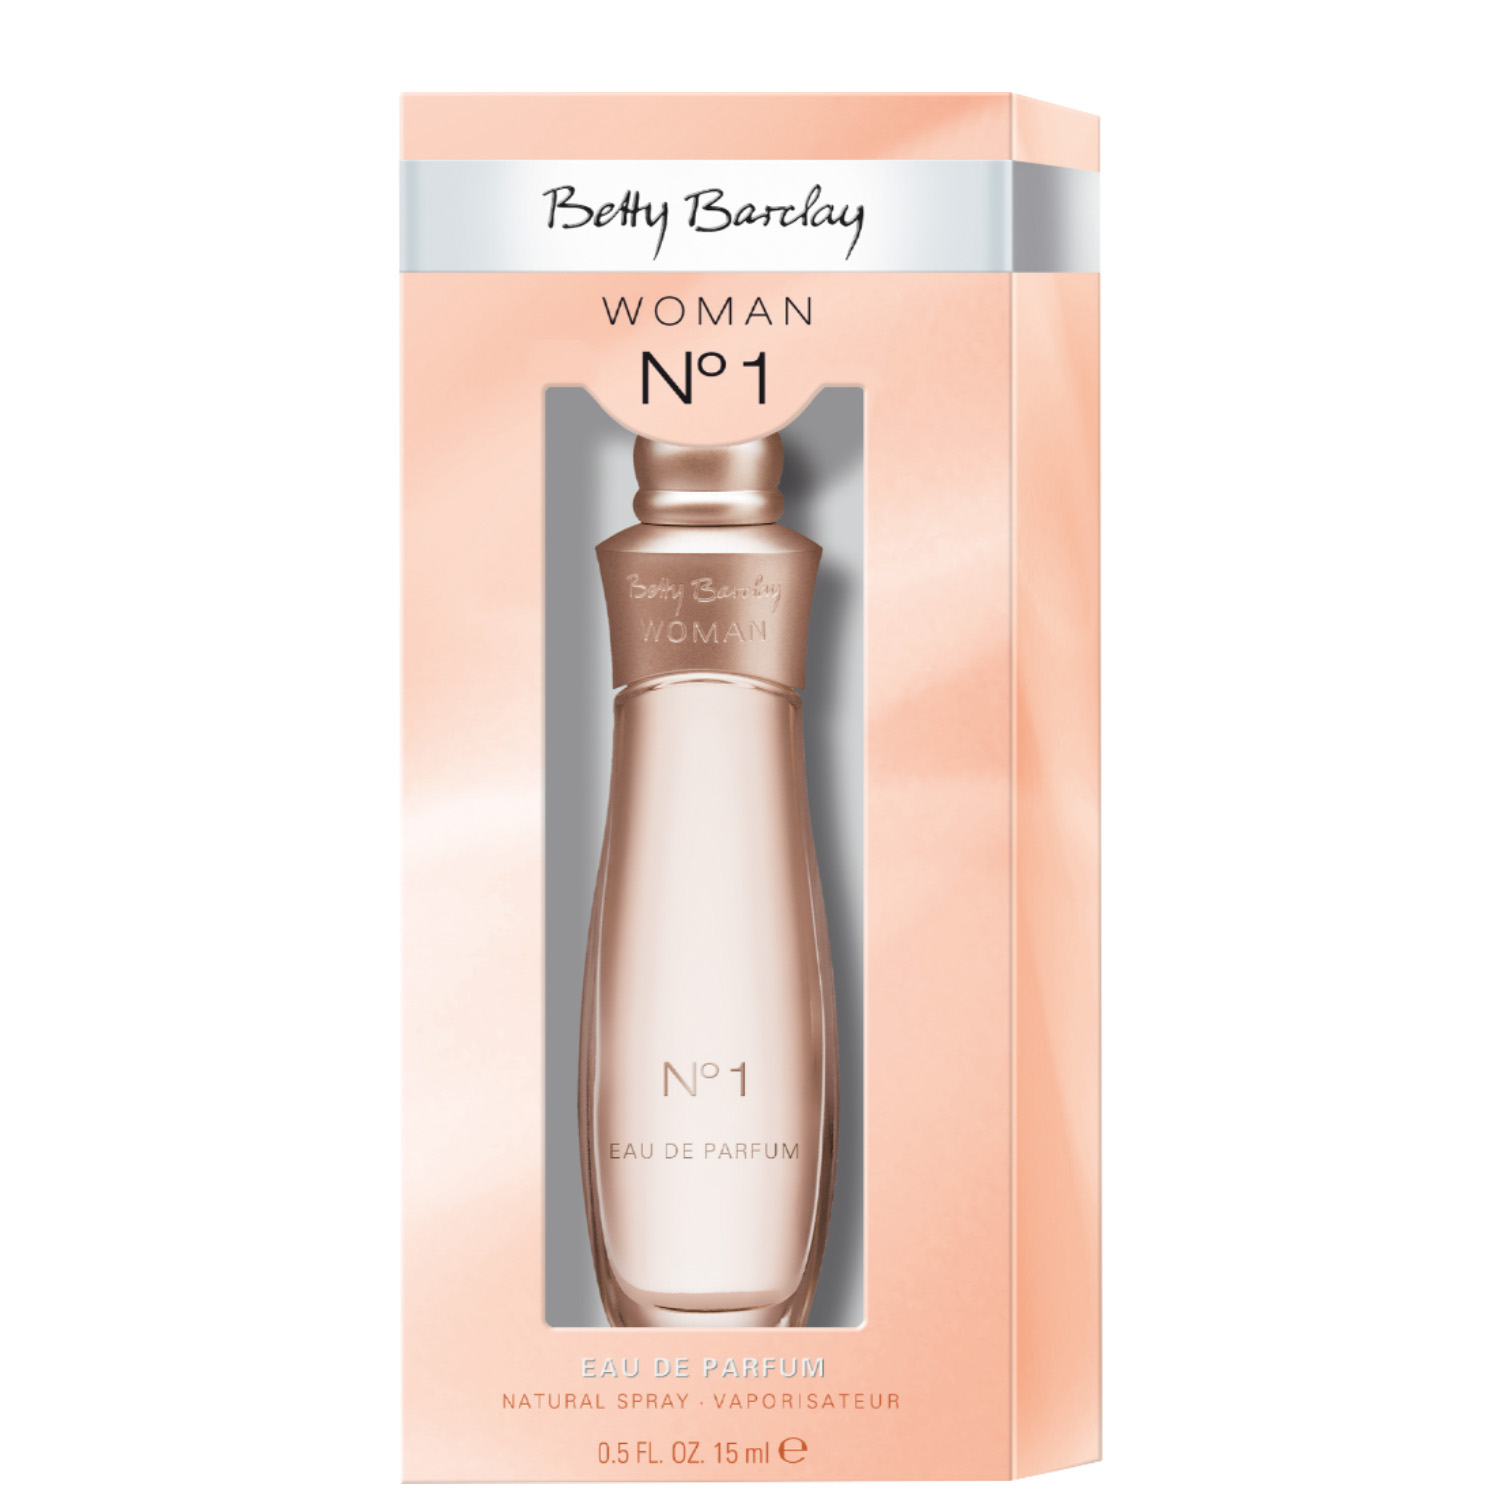 Betty Barclay Woman No.1 Eau de Parfum 15ml